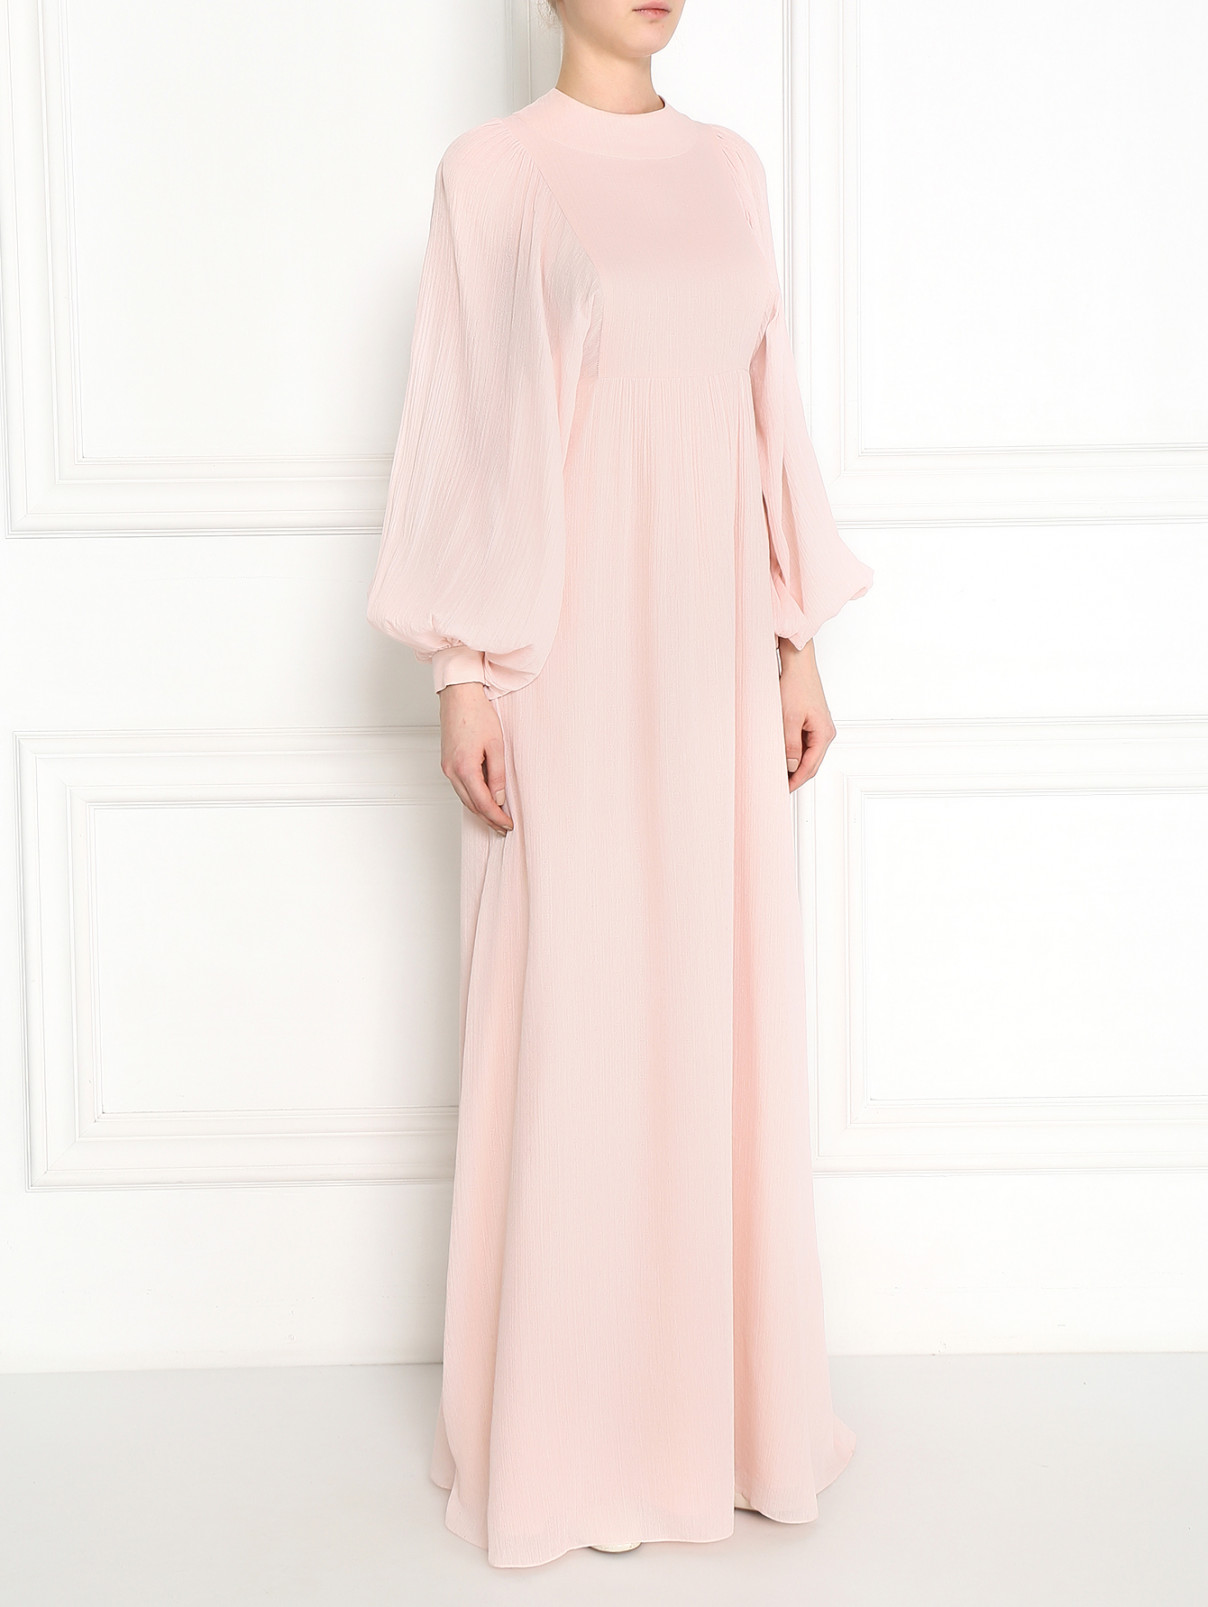 Платье-макси из шелка и хлопка Vika Gazinskaya  –  Модель Общий вид  – Цвет:  Розовый